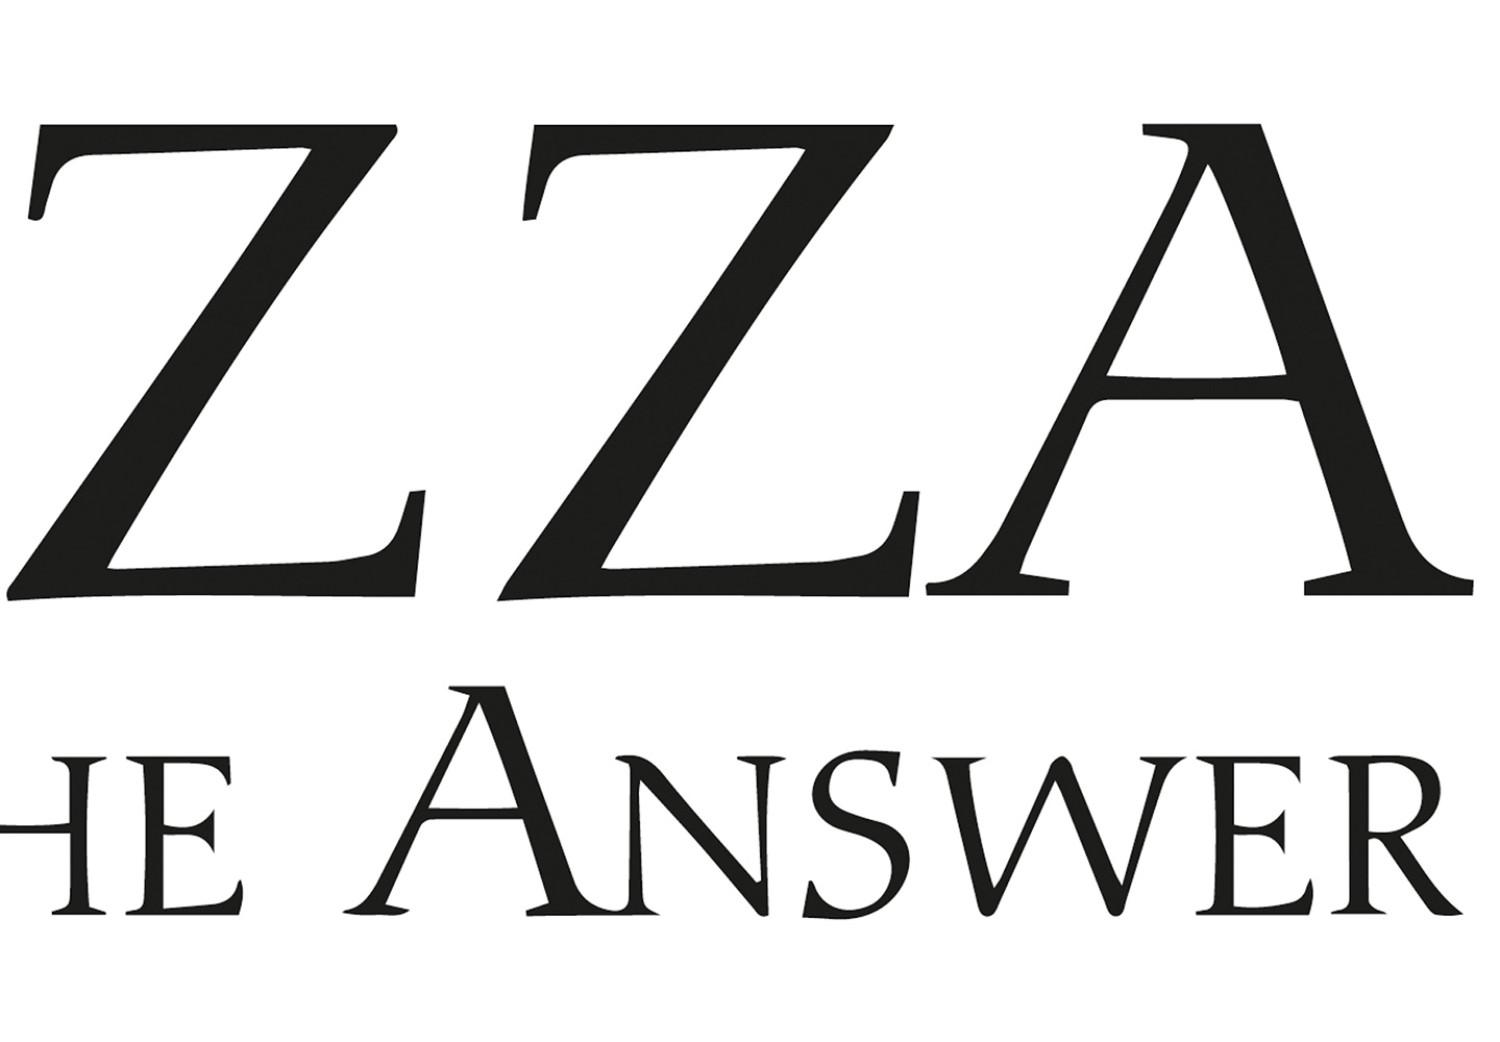 Cuadro moderno Pizza - gráfico en blanco y negro con las palabras Pizza is the answer